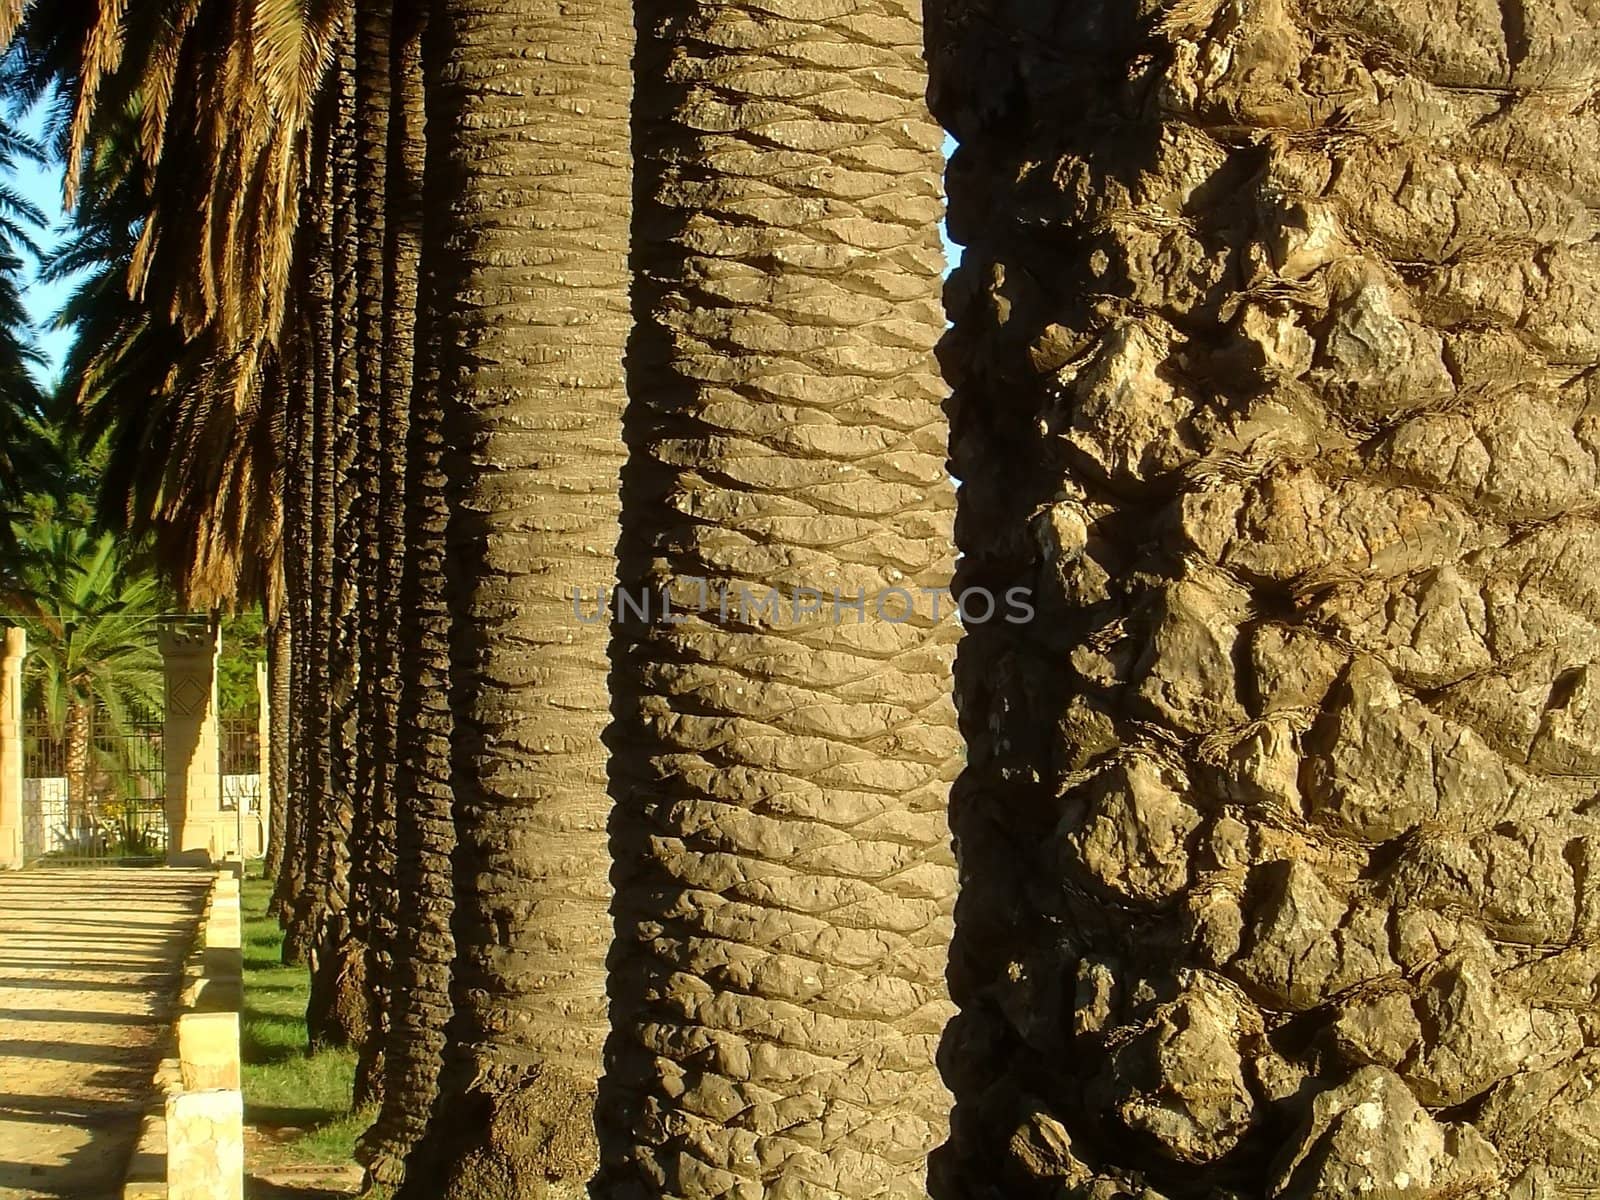 Palm trunks by baggiovara